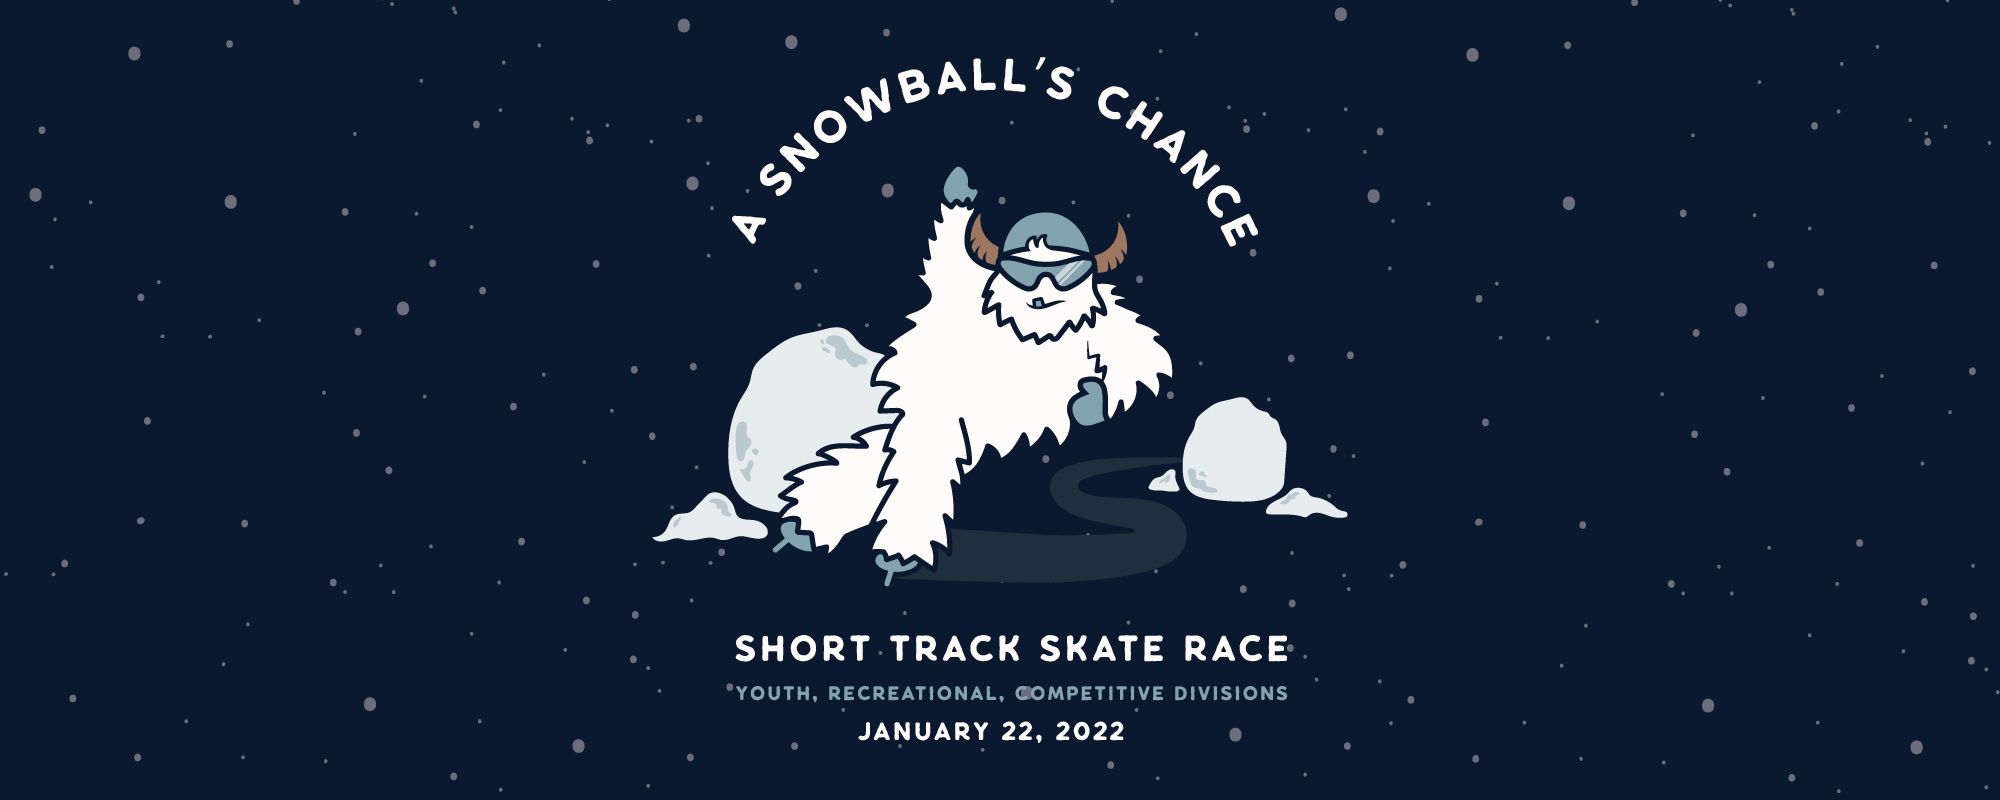 2022 A Snowball's Chance